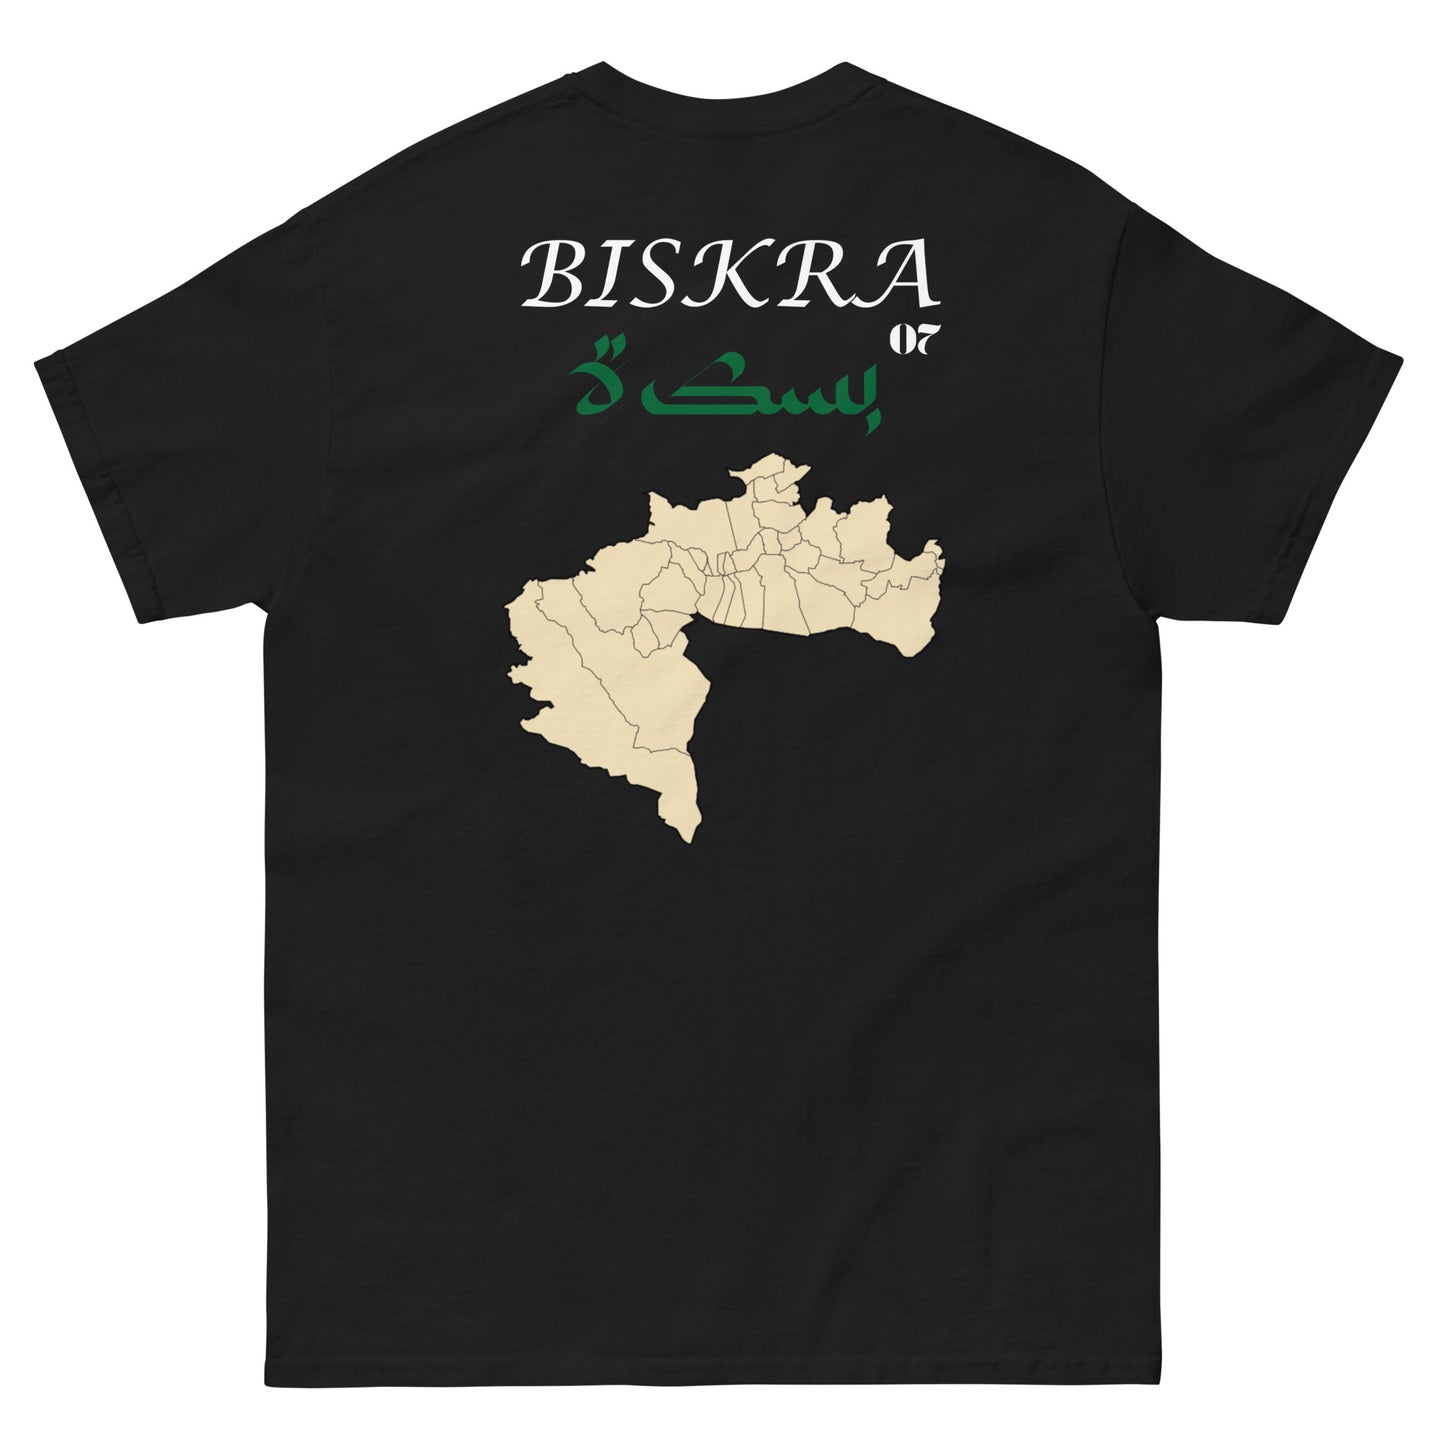 Biskra t-shirt